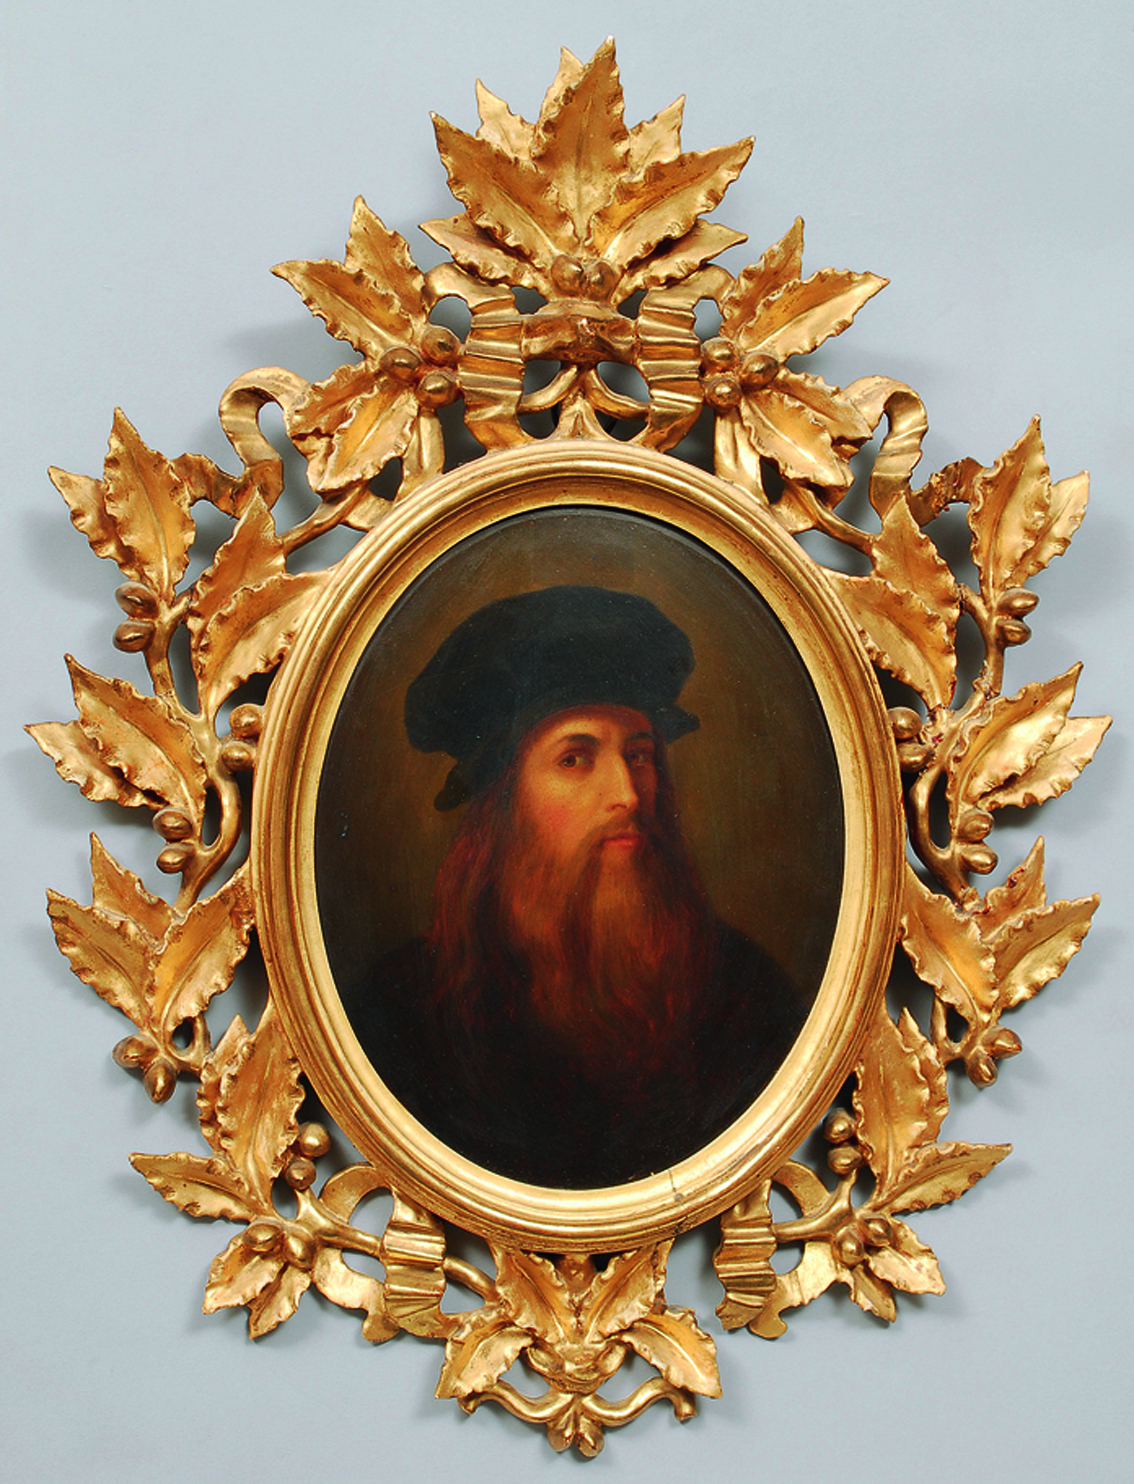 A copy after a posthum portrait of Leonardo d a Vinci